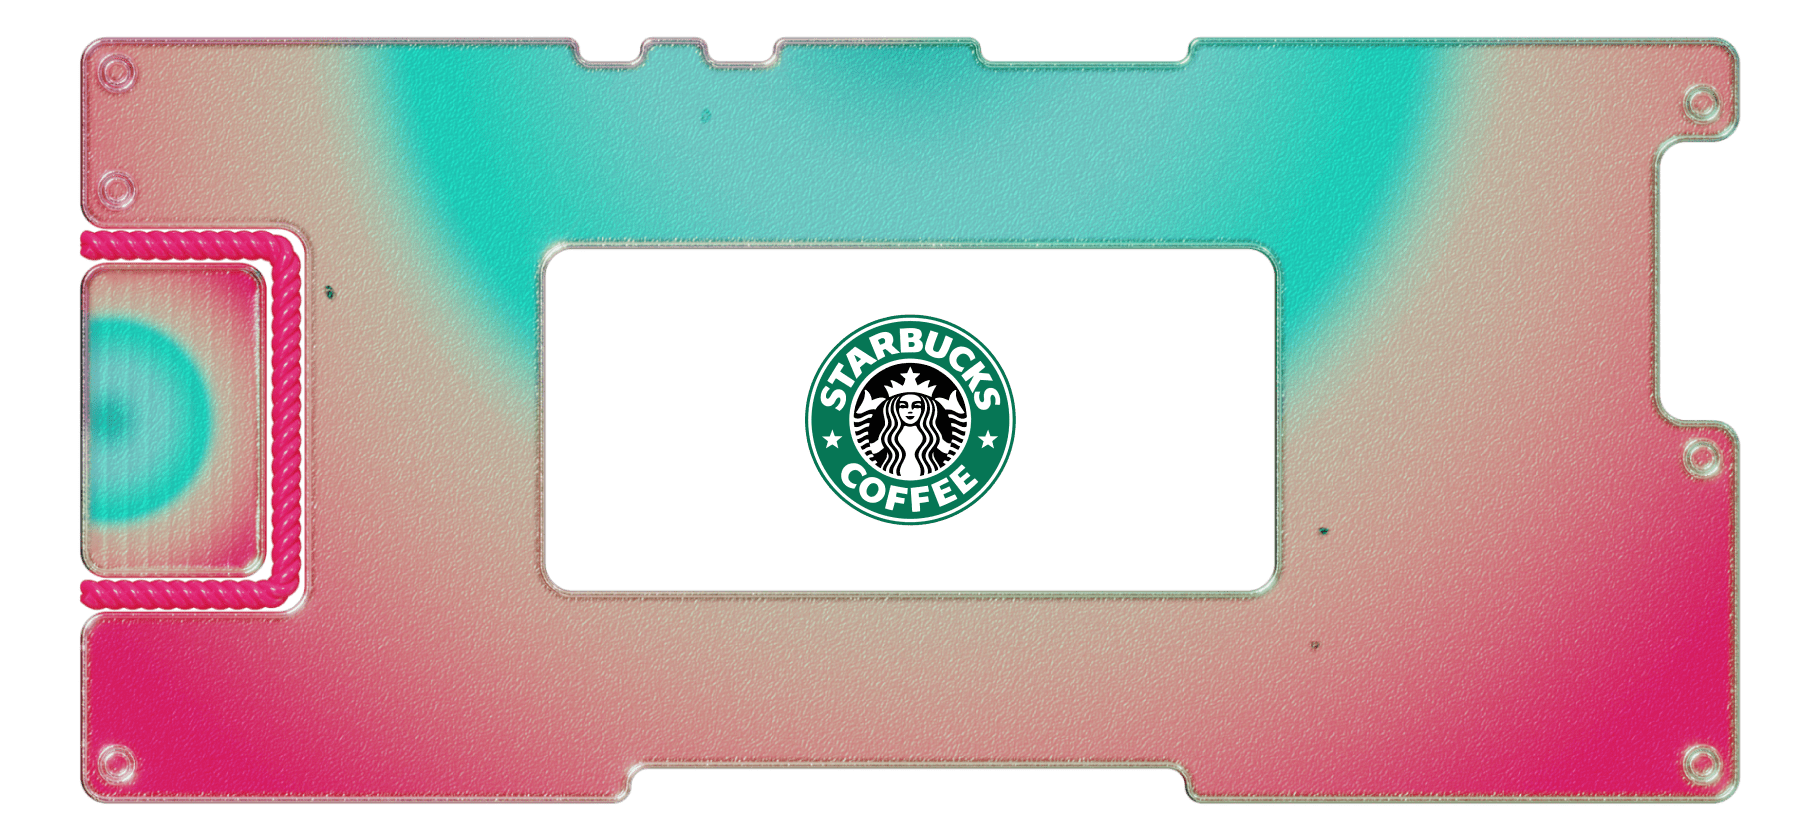 Изучаем бизнес крупнейшей кофейной компании Starbucks